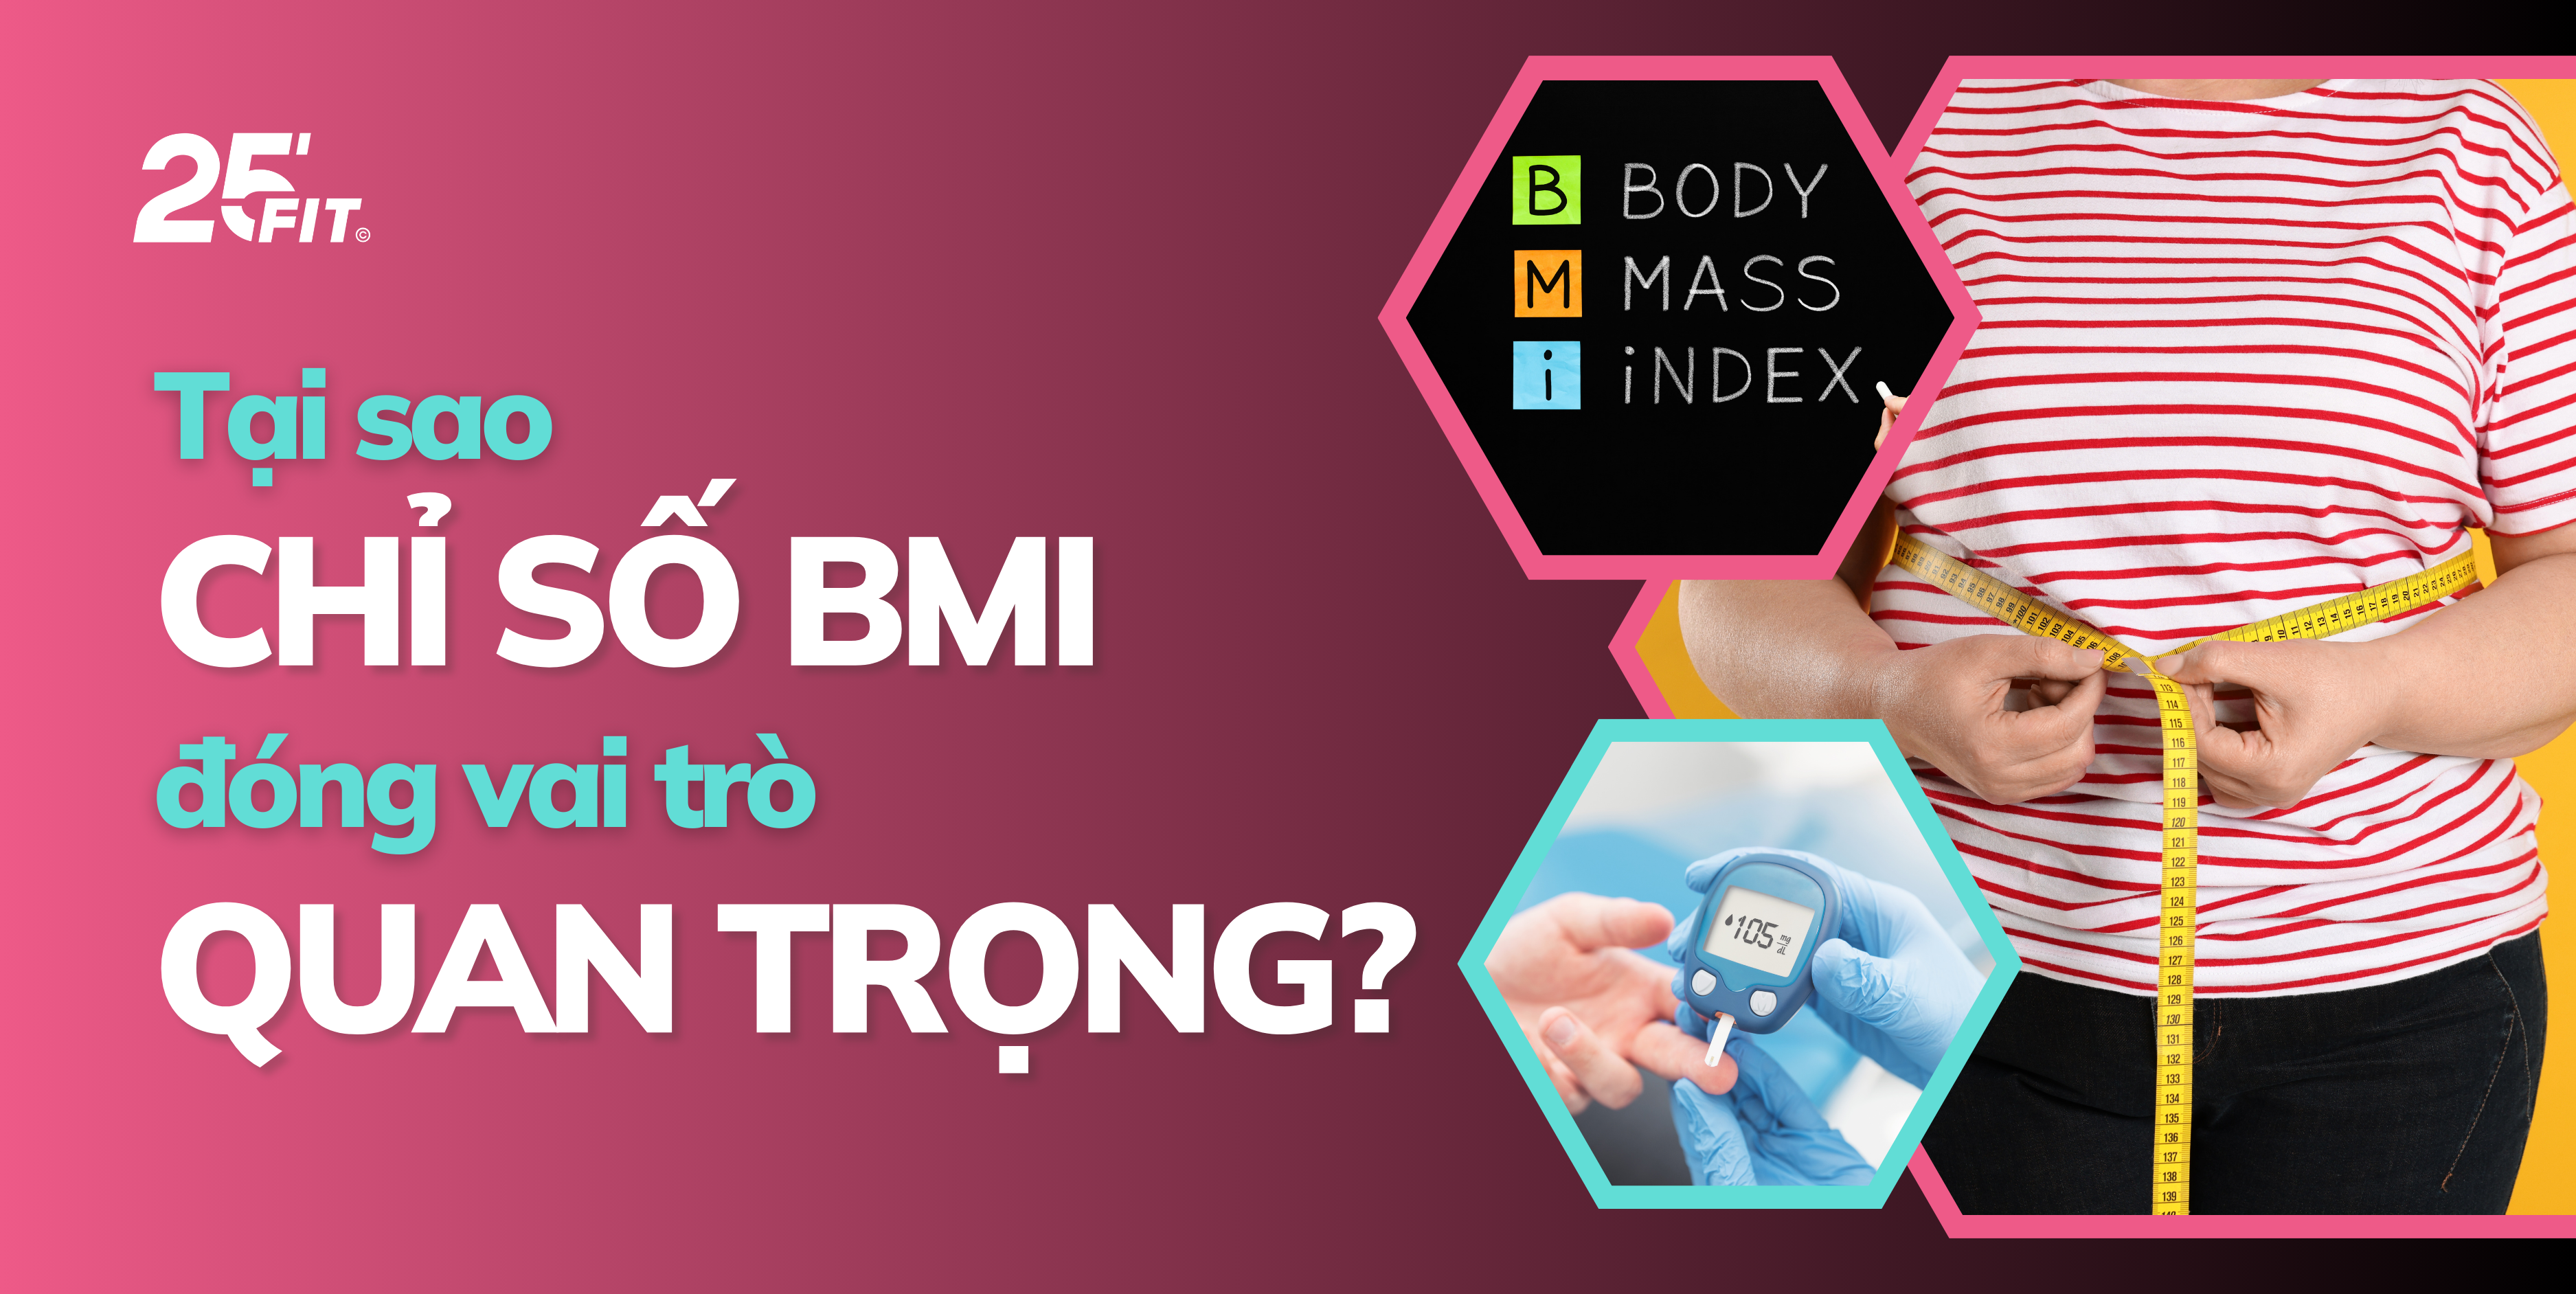 Tại sao chỉ số BMI đóng vai trò quan trọng?